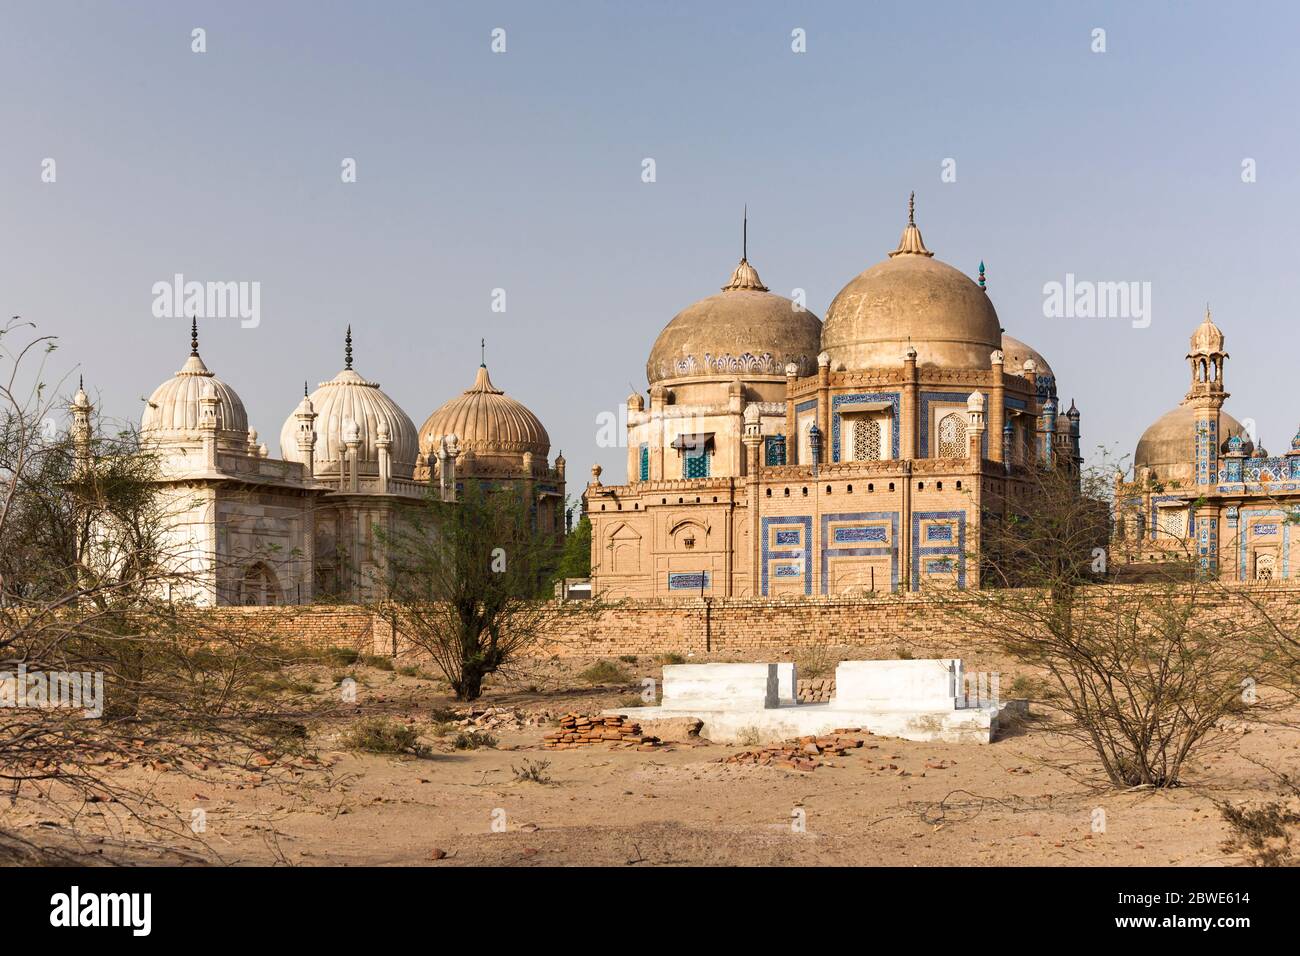 Royal Graveyard of Derawar Fort, Derawar, Bahawalpur district, Punjab Province, Pakistan, South Asia, Asia Stock Photo